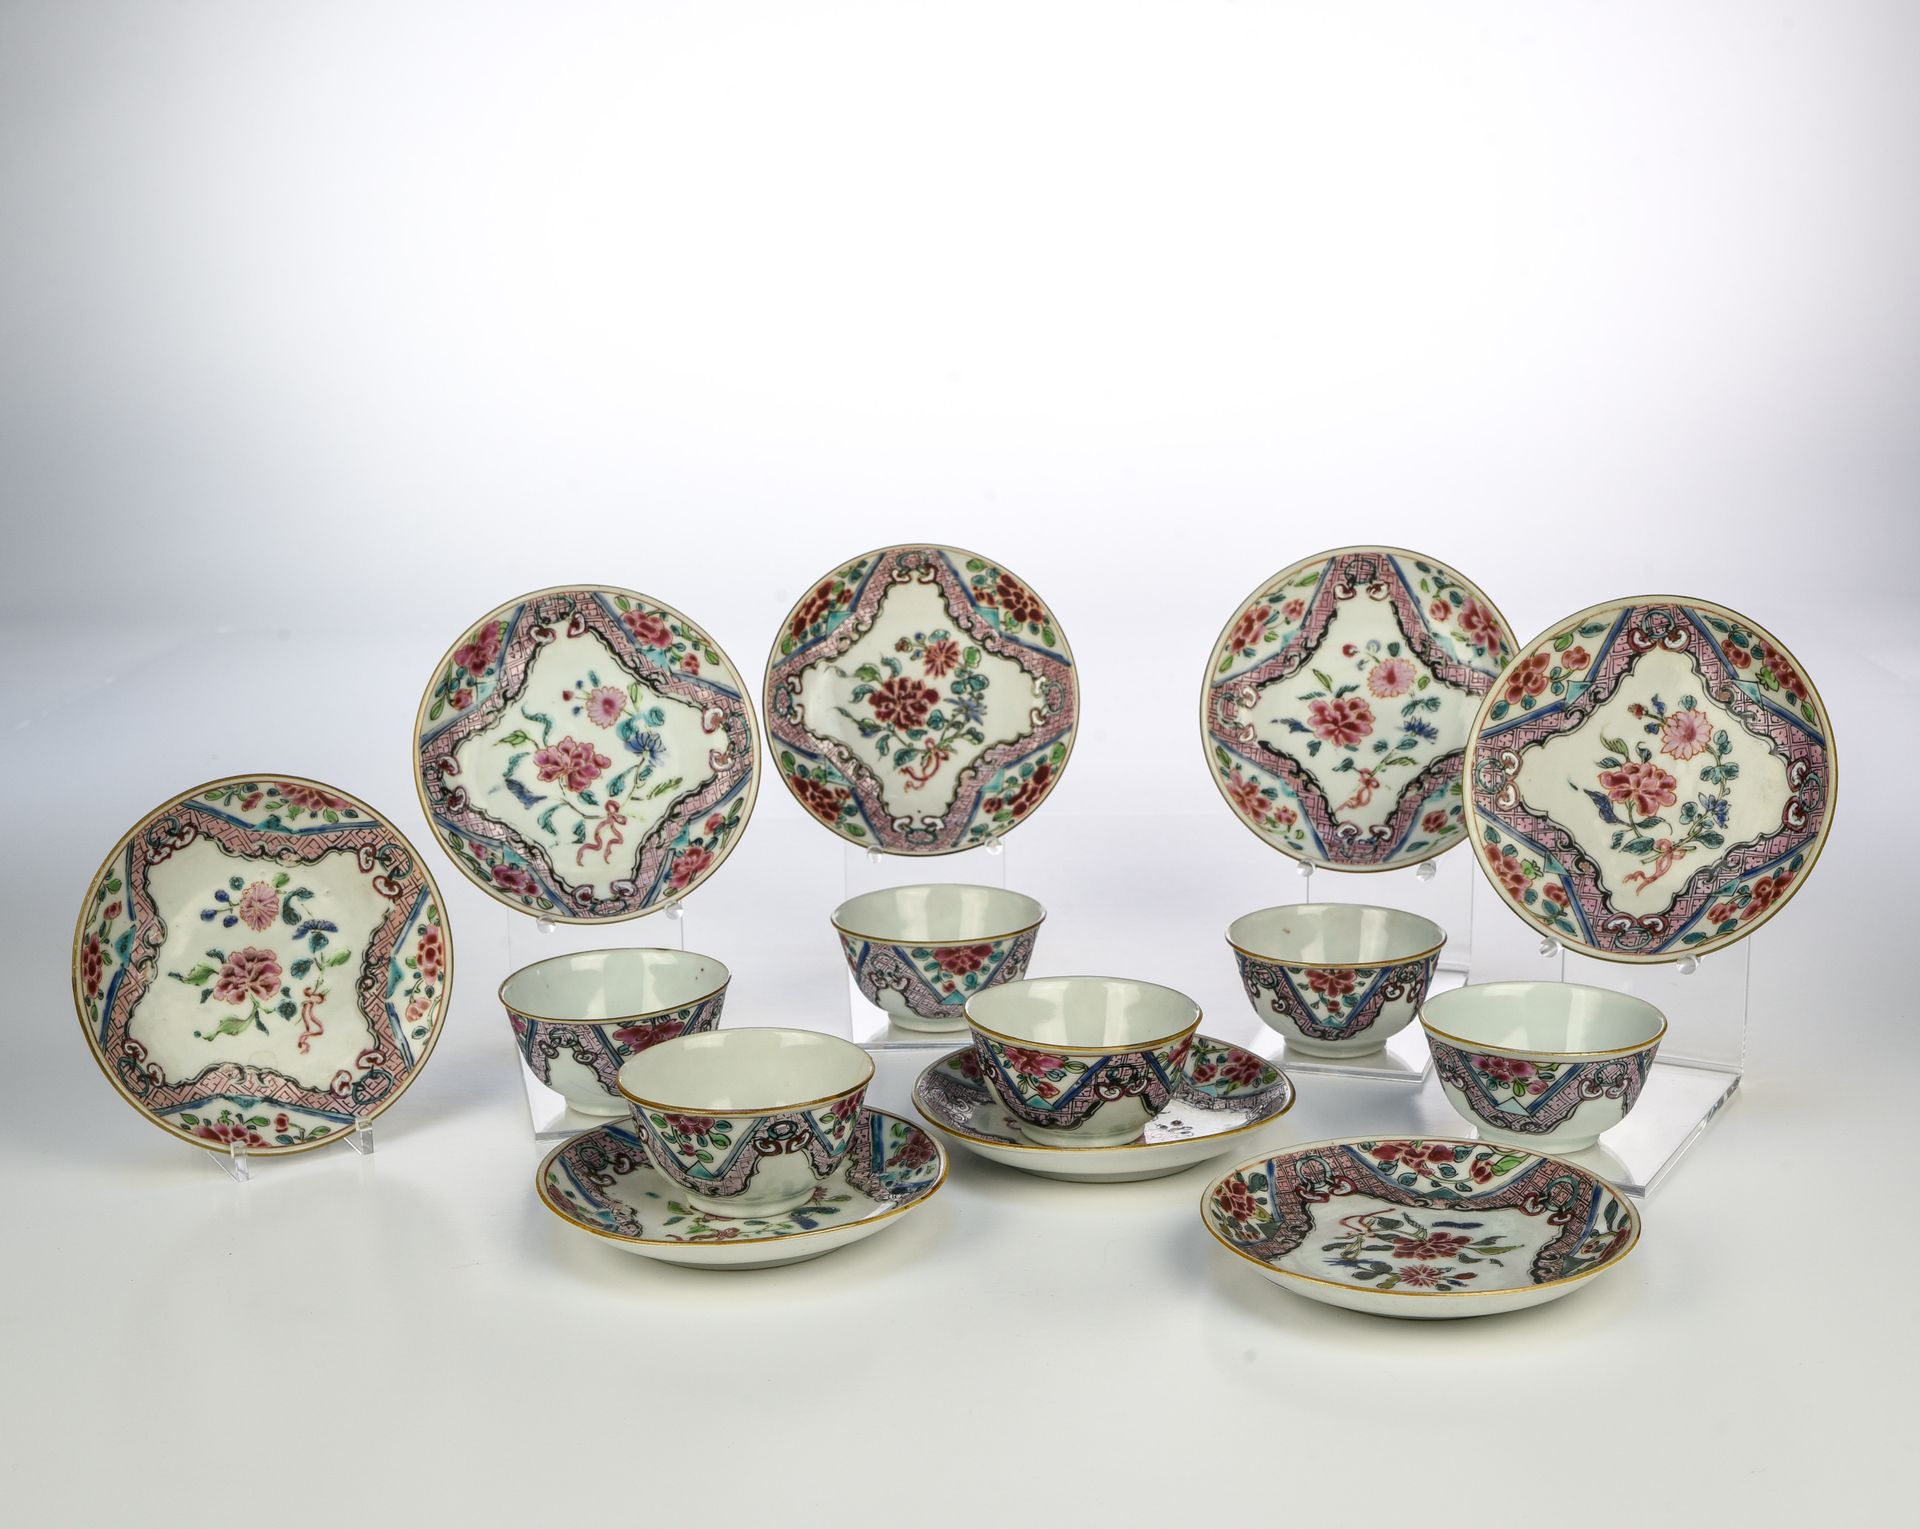 Null 中国 - 雍正时期 (1723 - 1735)

套装包括六种冰糕和八个展示架



珐琅彩瓷器，中间是牡丹和菊花，周围是粉色格子图案。

 

冰糕&hellip;